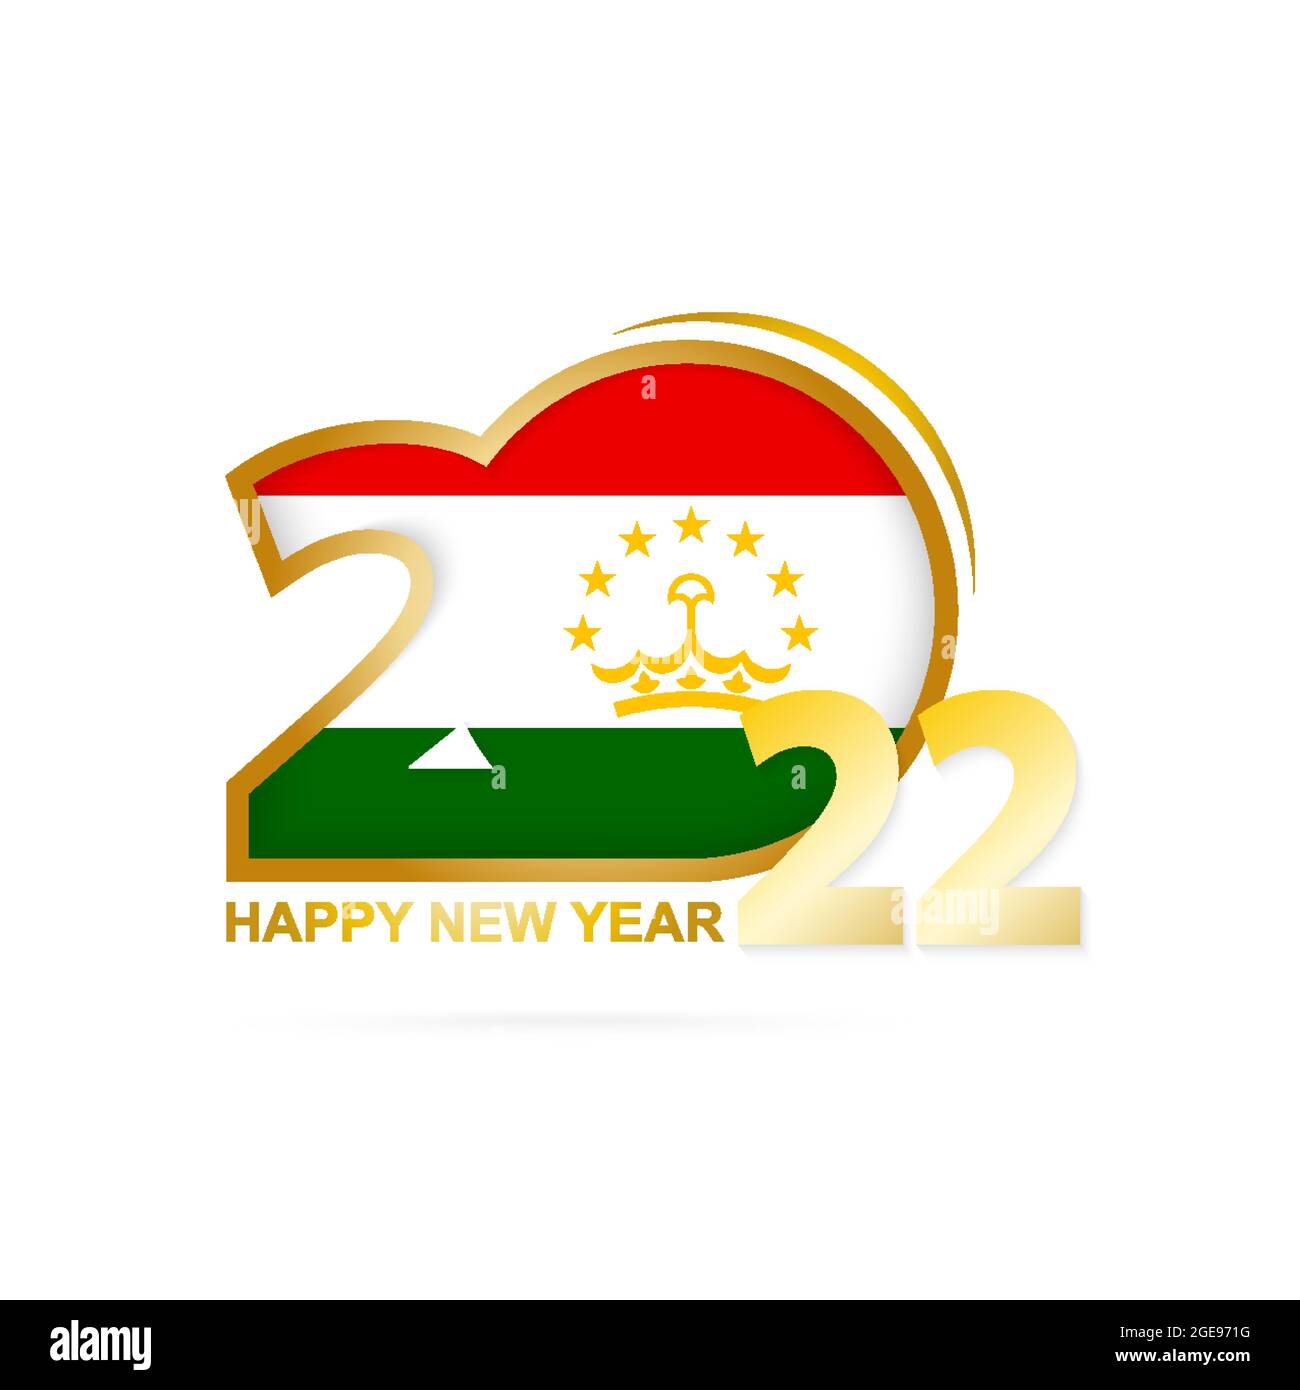 Anno 2022 con modello di bandiera del Tagikistan. Felice anno nuovo design. Illustrazione vettoriale. Illustrazione Vettoriale